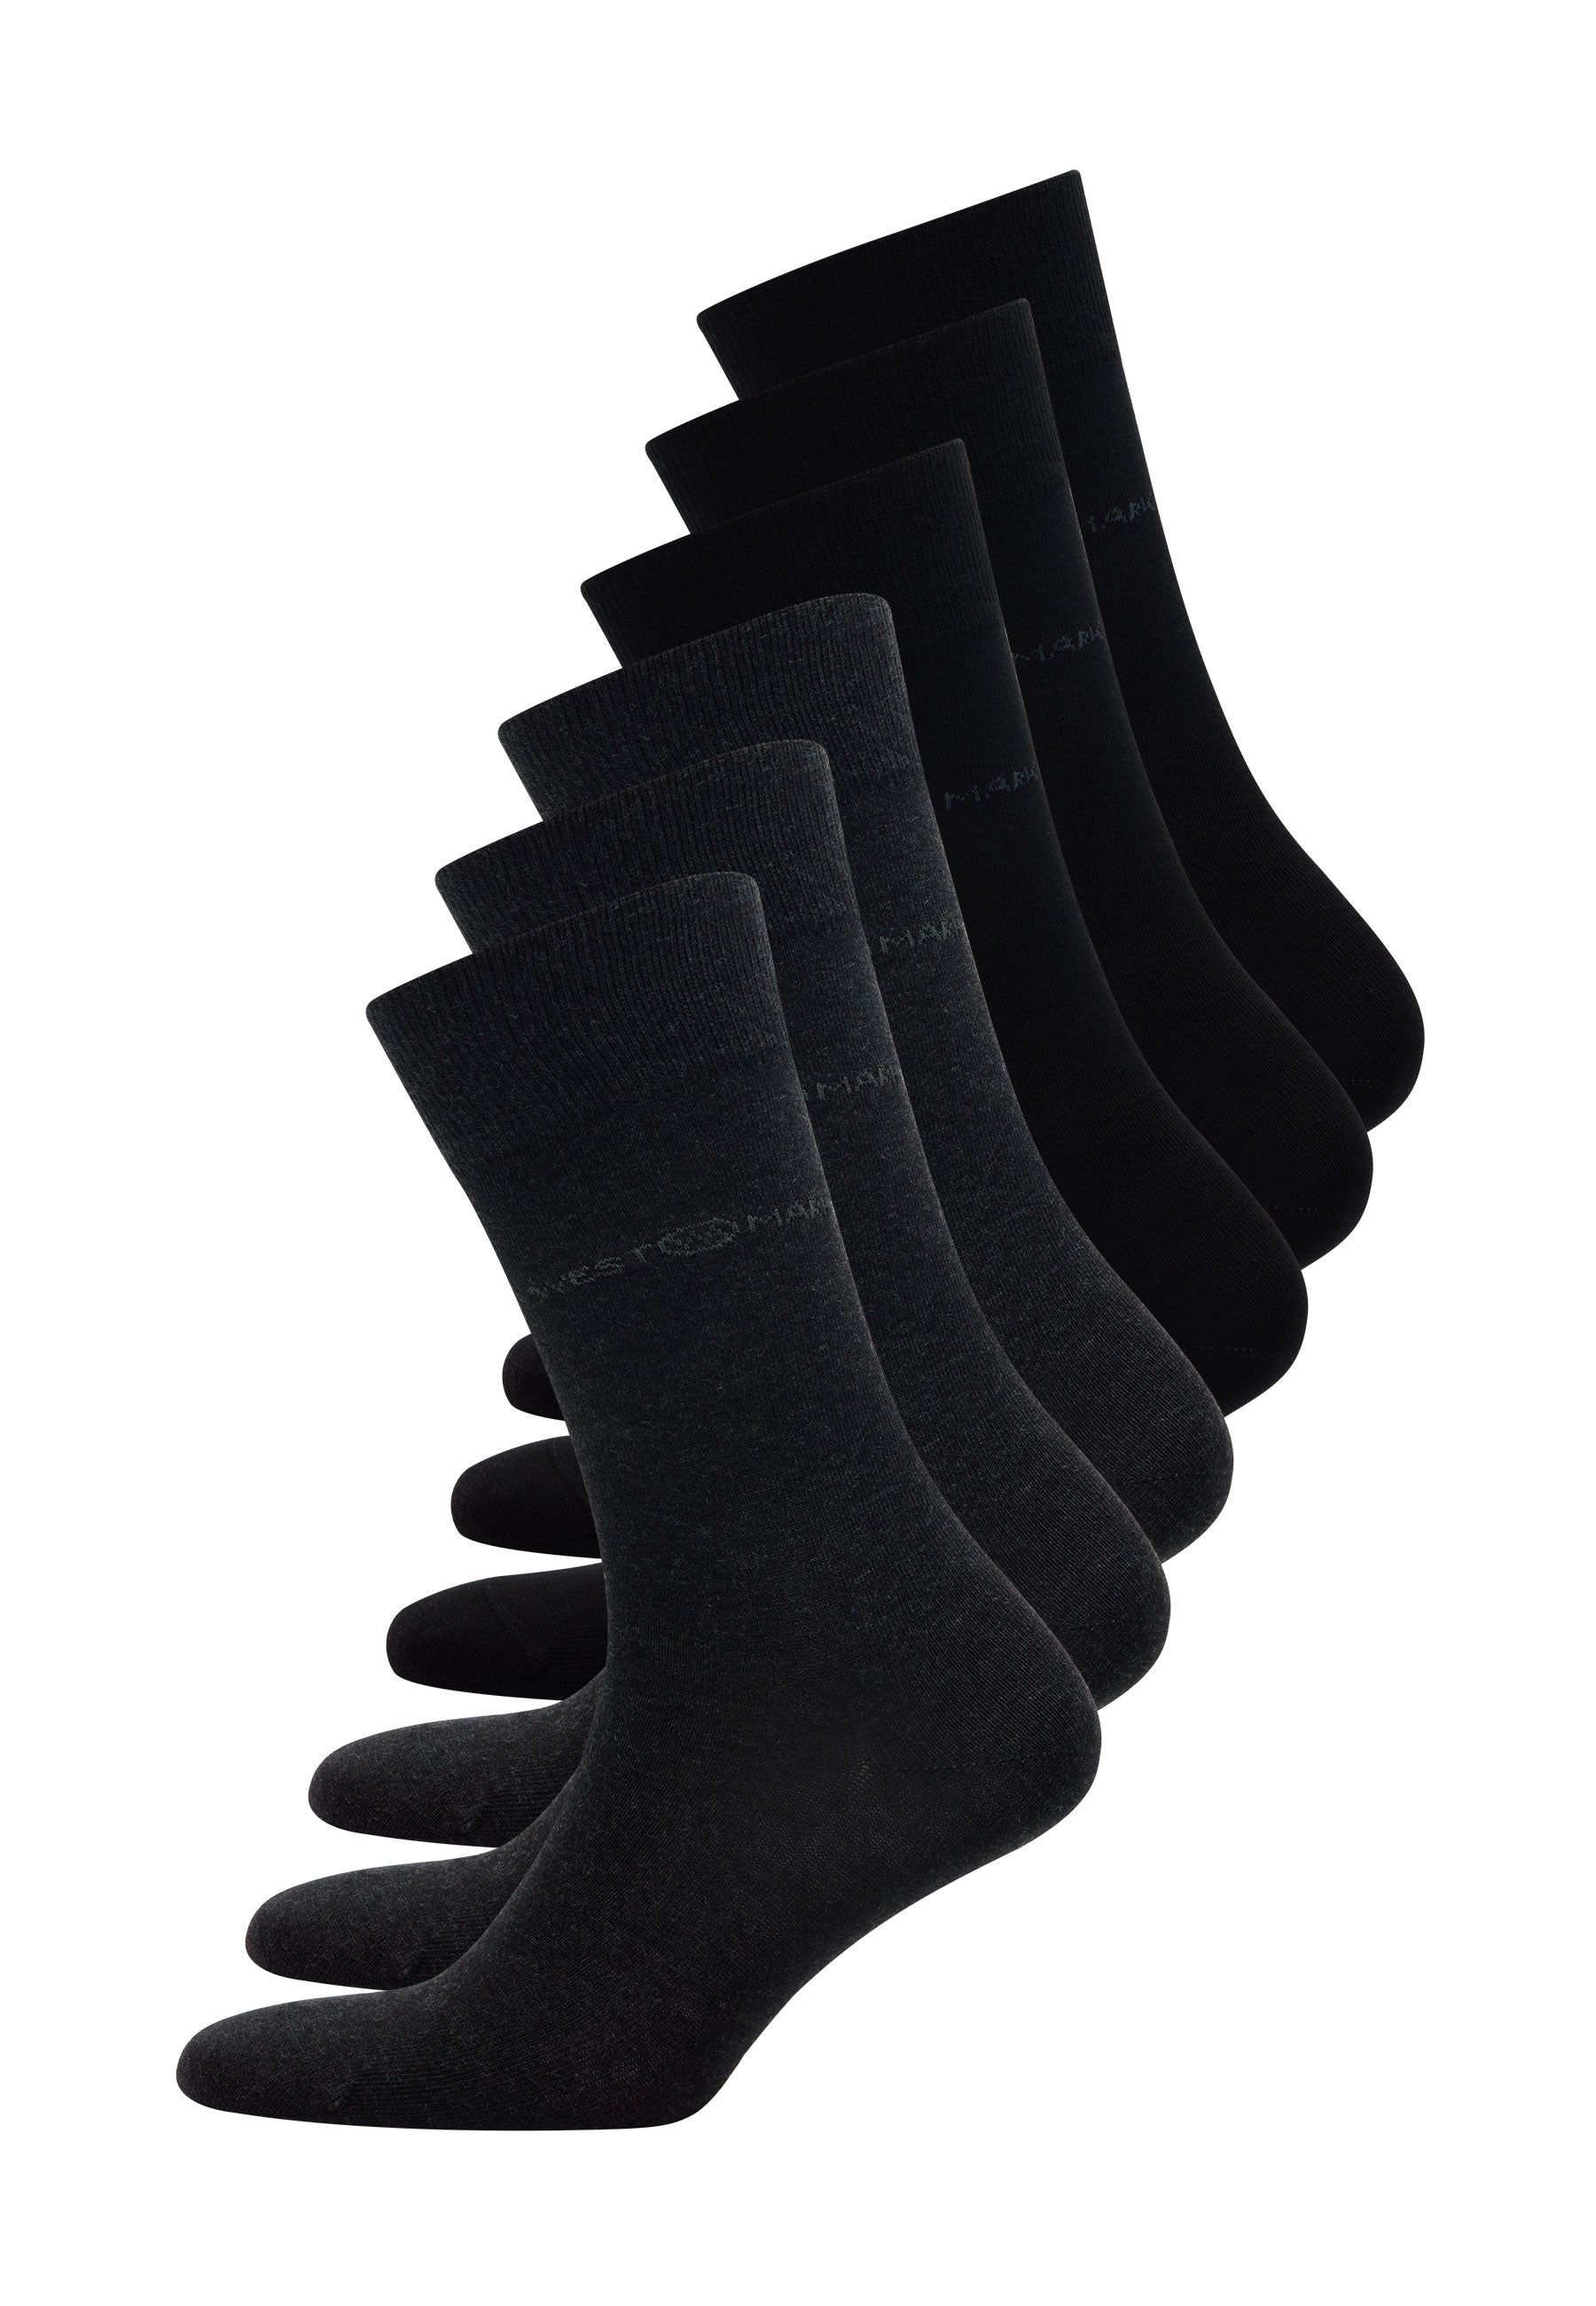 6’lı Siyah Antrasit Pamuk Karışımlı Klasik Erkek Çorap Seti CLASSIC BUSINESS - Socks - Westmark London EU(TR) Store Organik Pamuklu Sürdürülebilir Moda